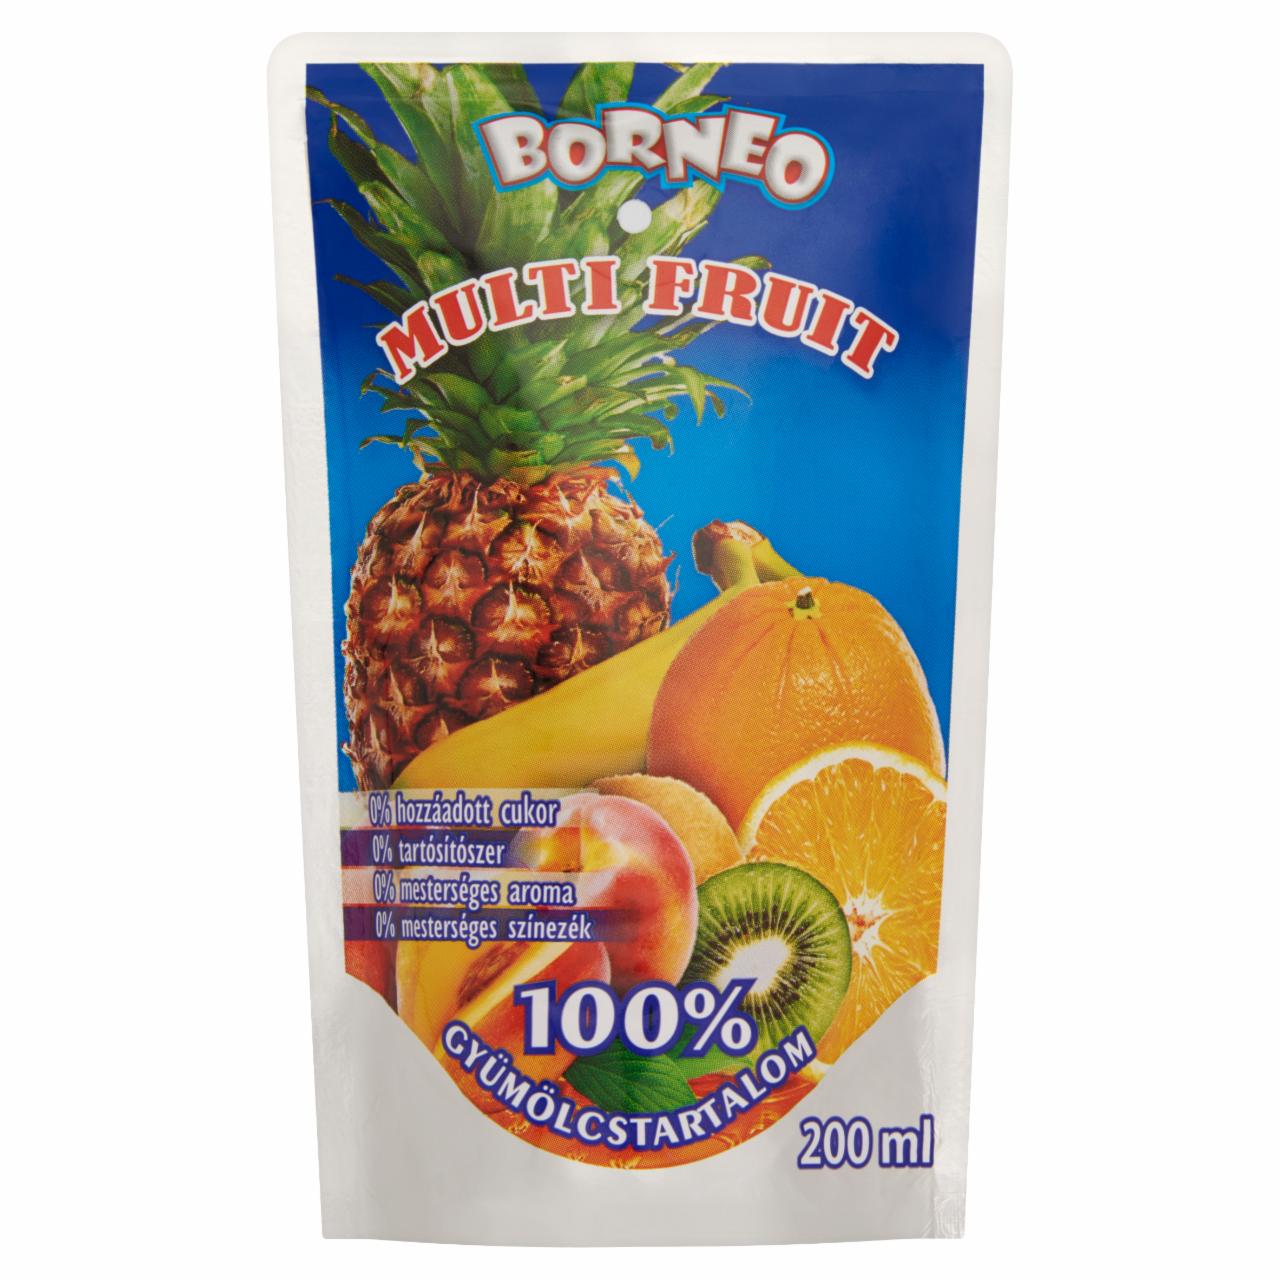 Képek - Borneo multi fruit vegyes gyümölcsital 200 ml